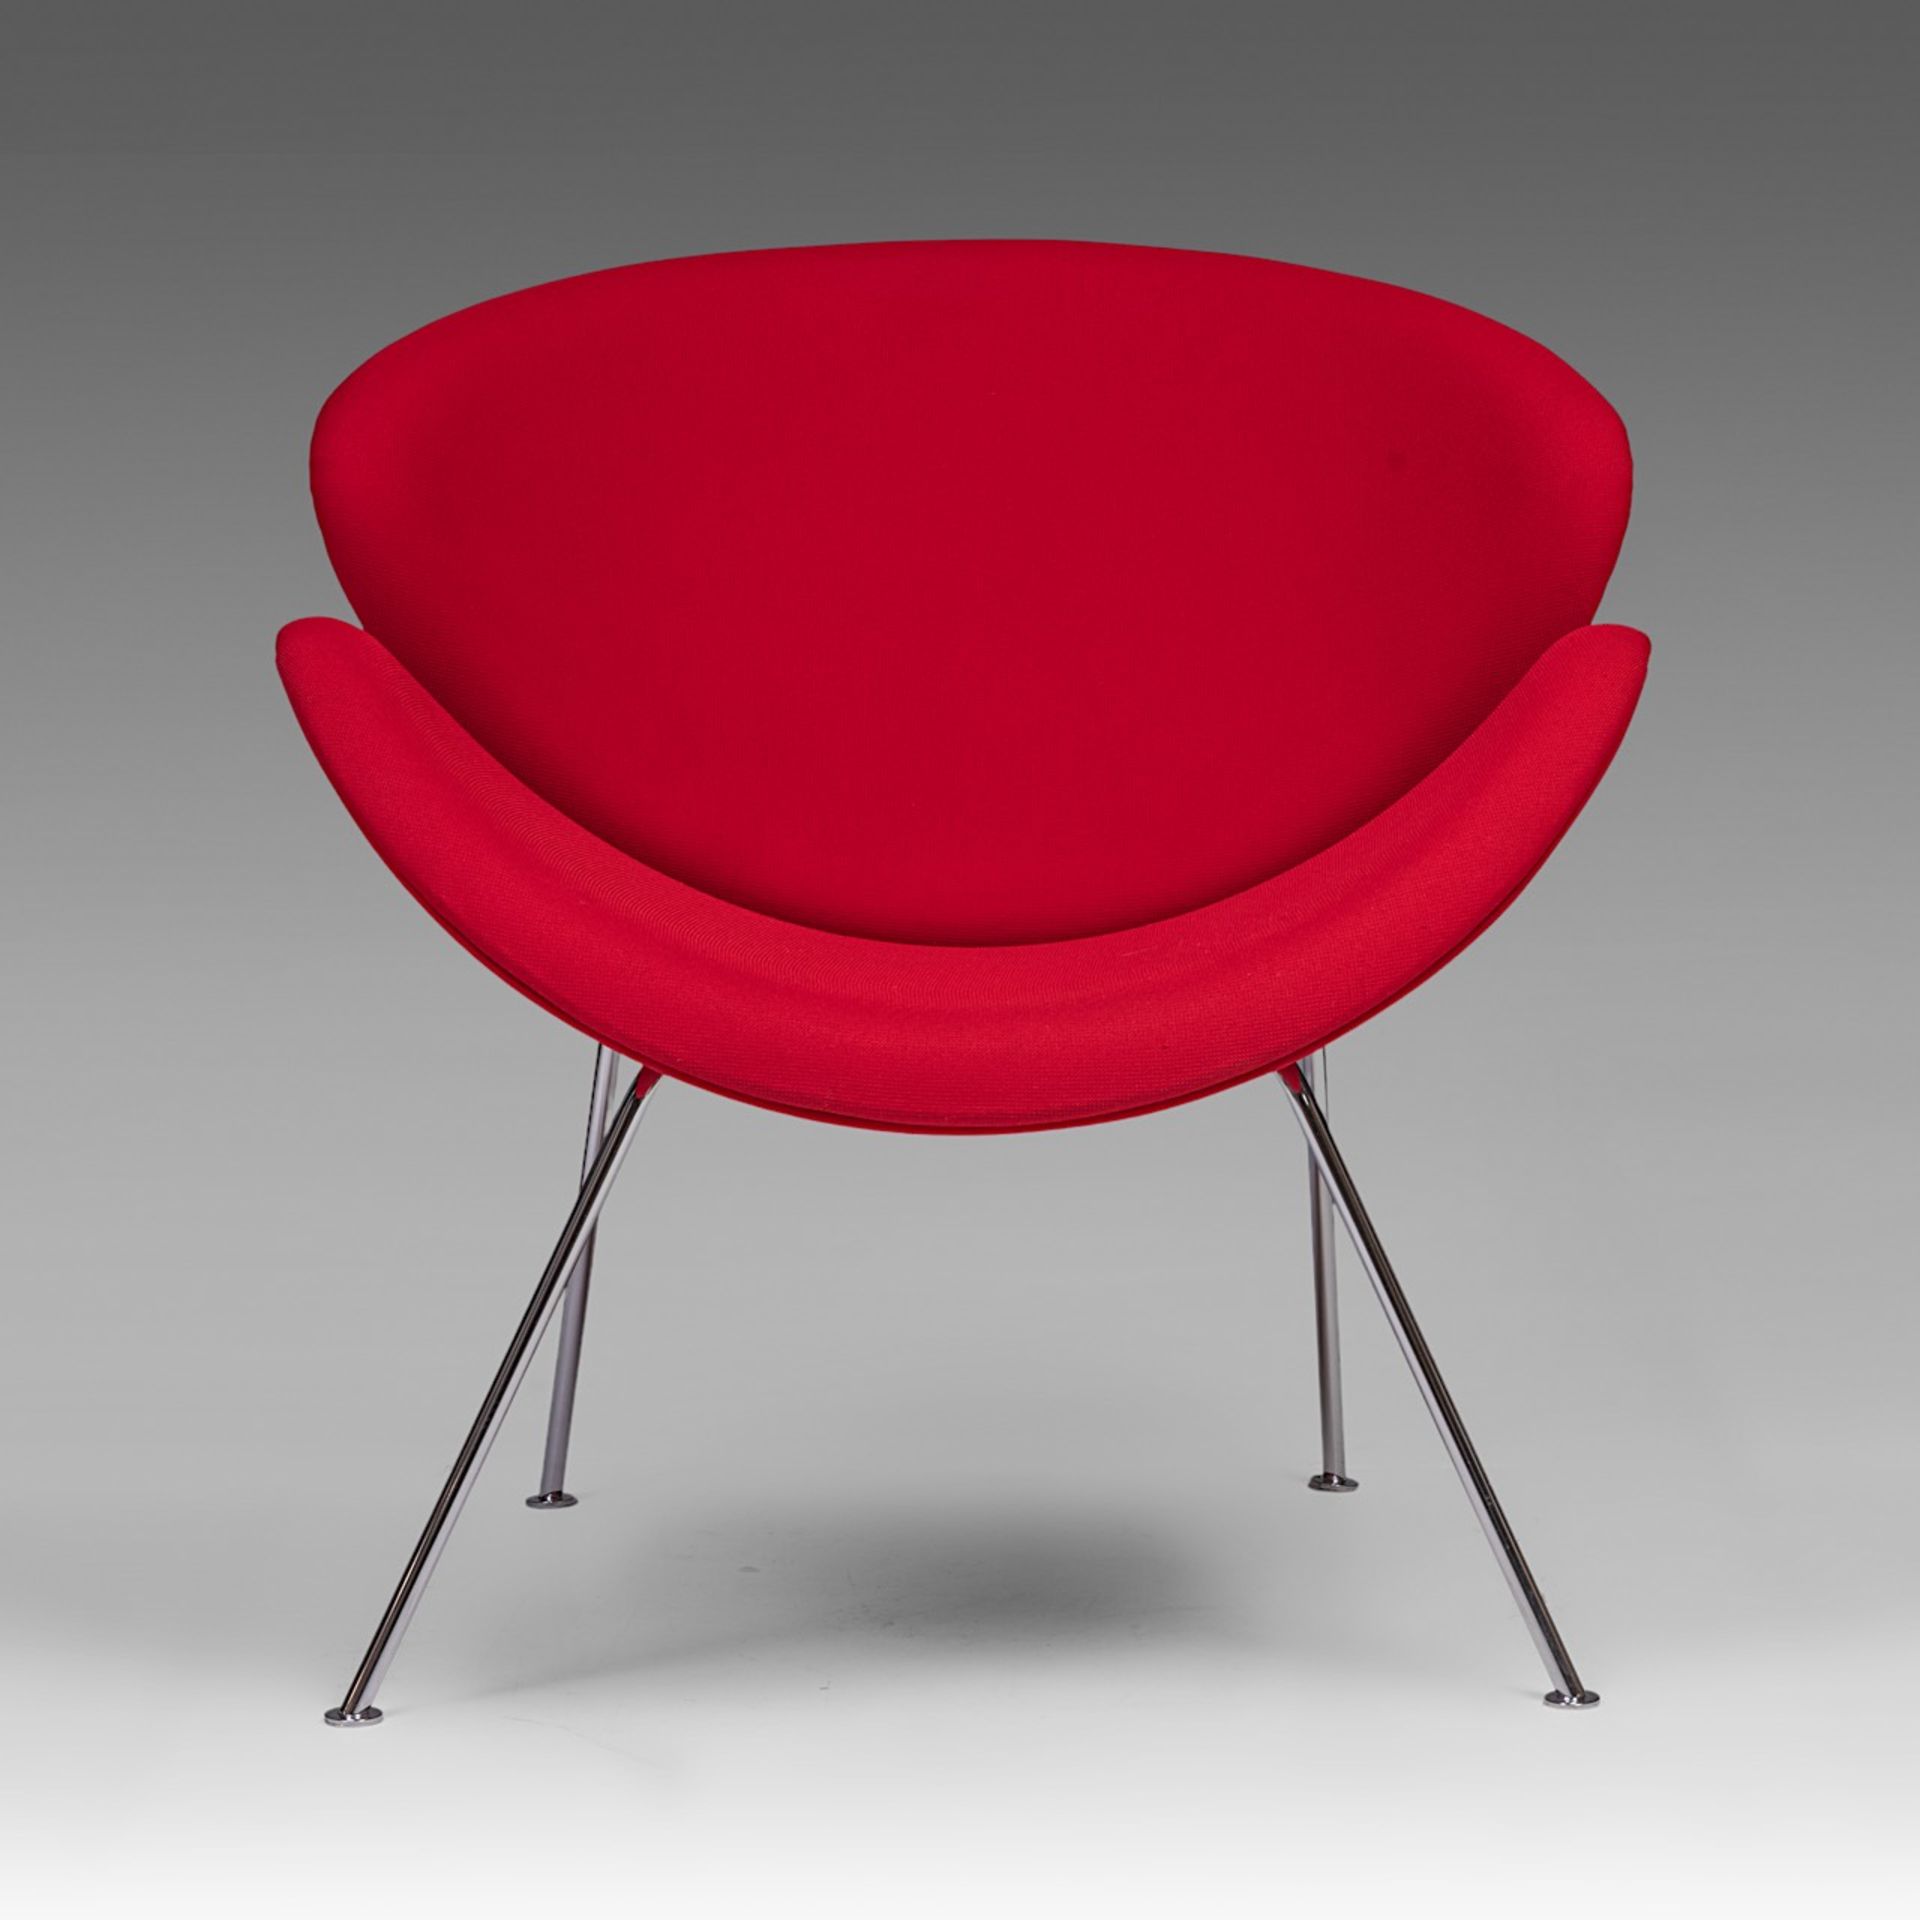 An Orange Slice chair by Pierre Pauline for Artifort, H 85 - W 82 cm - Bild 3 aus 9